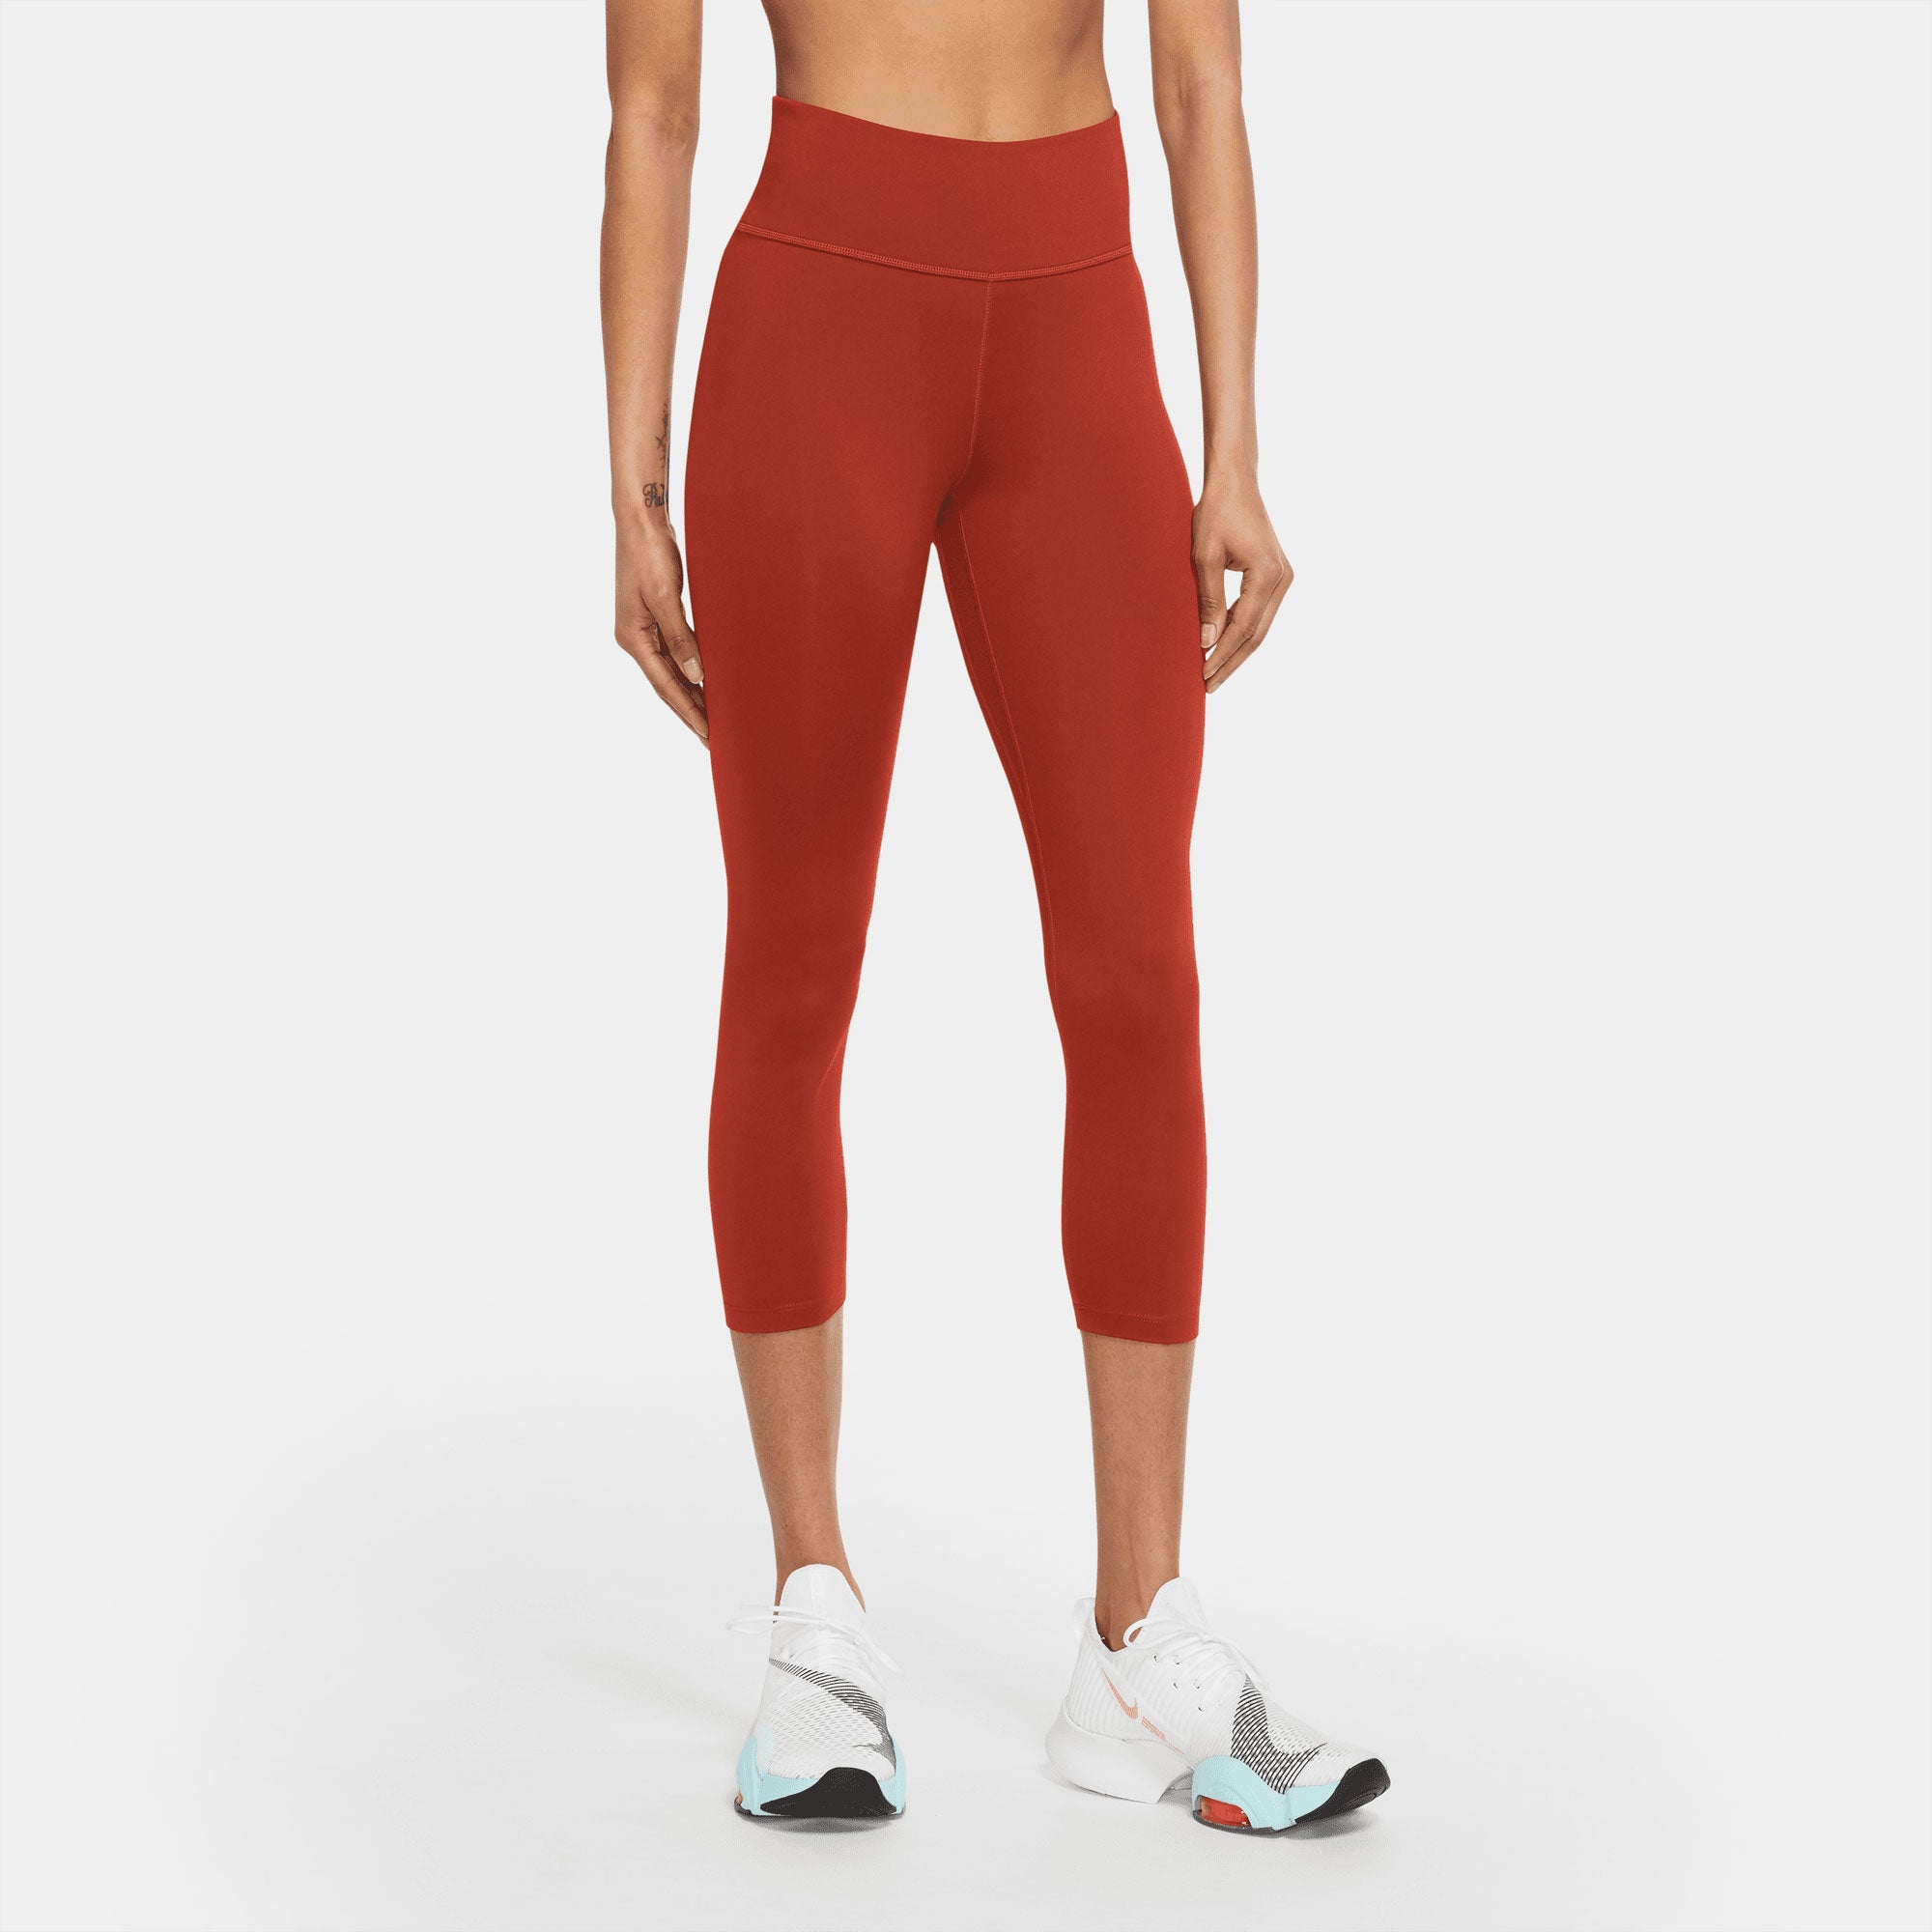 Women's Nike One Dri-Fit Mid-Rise Capri Leggings Black Sz S DD0245-010